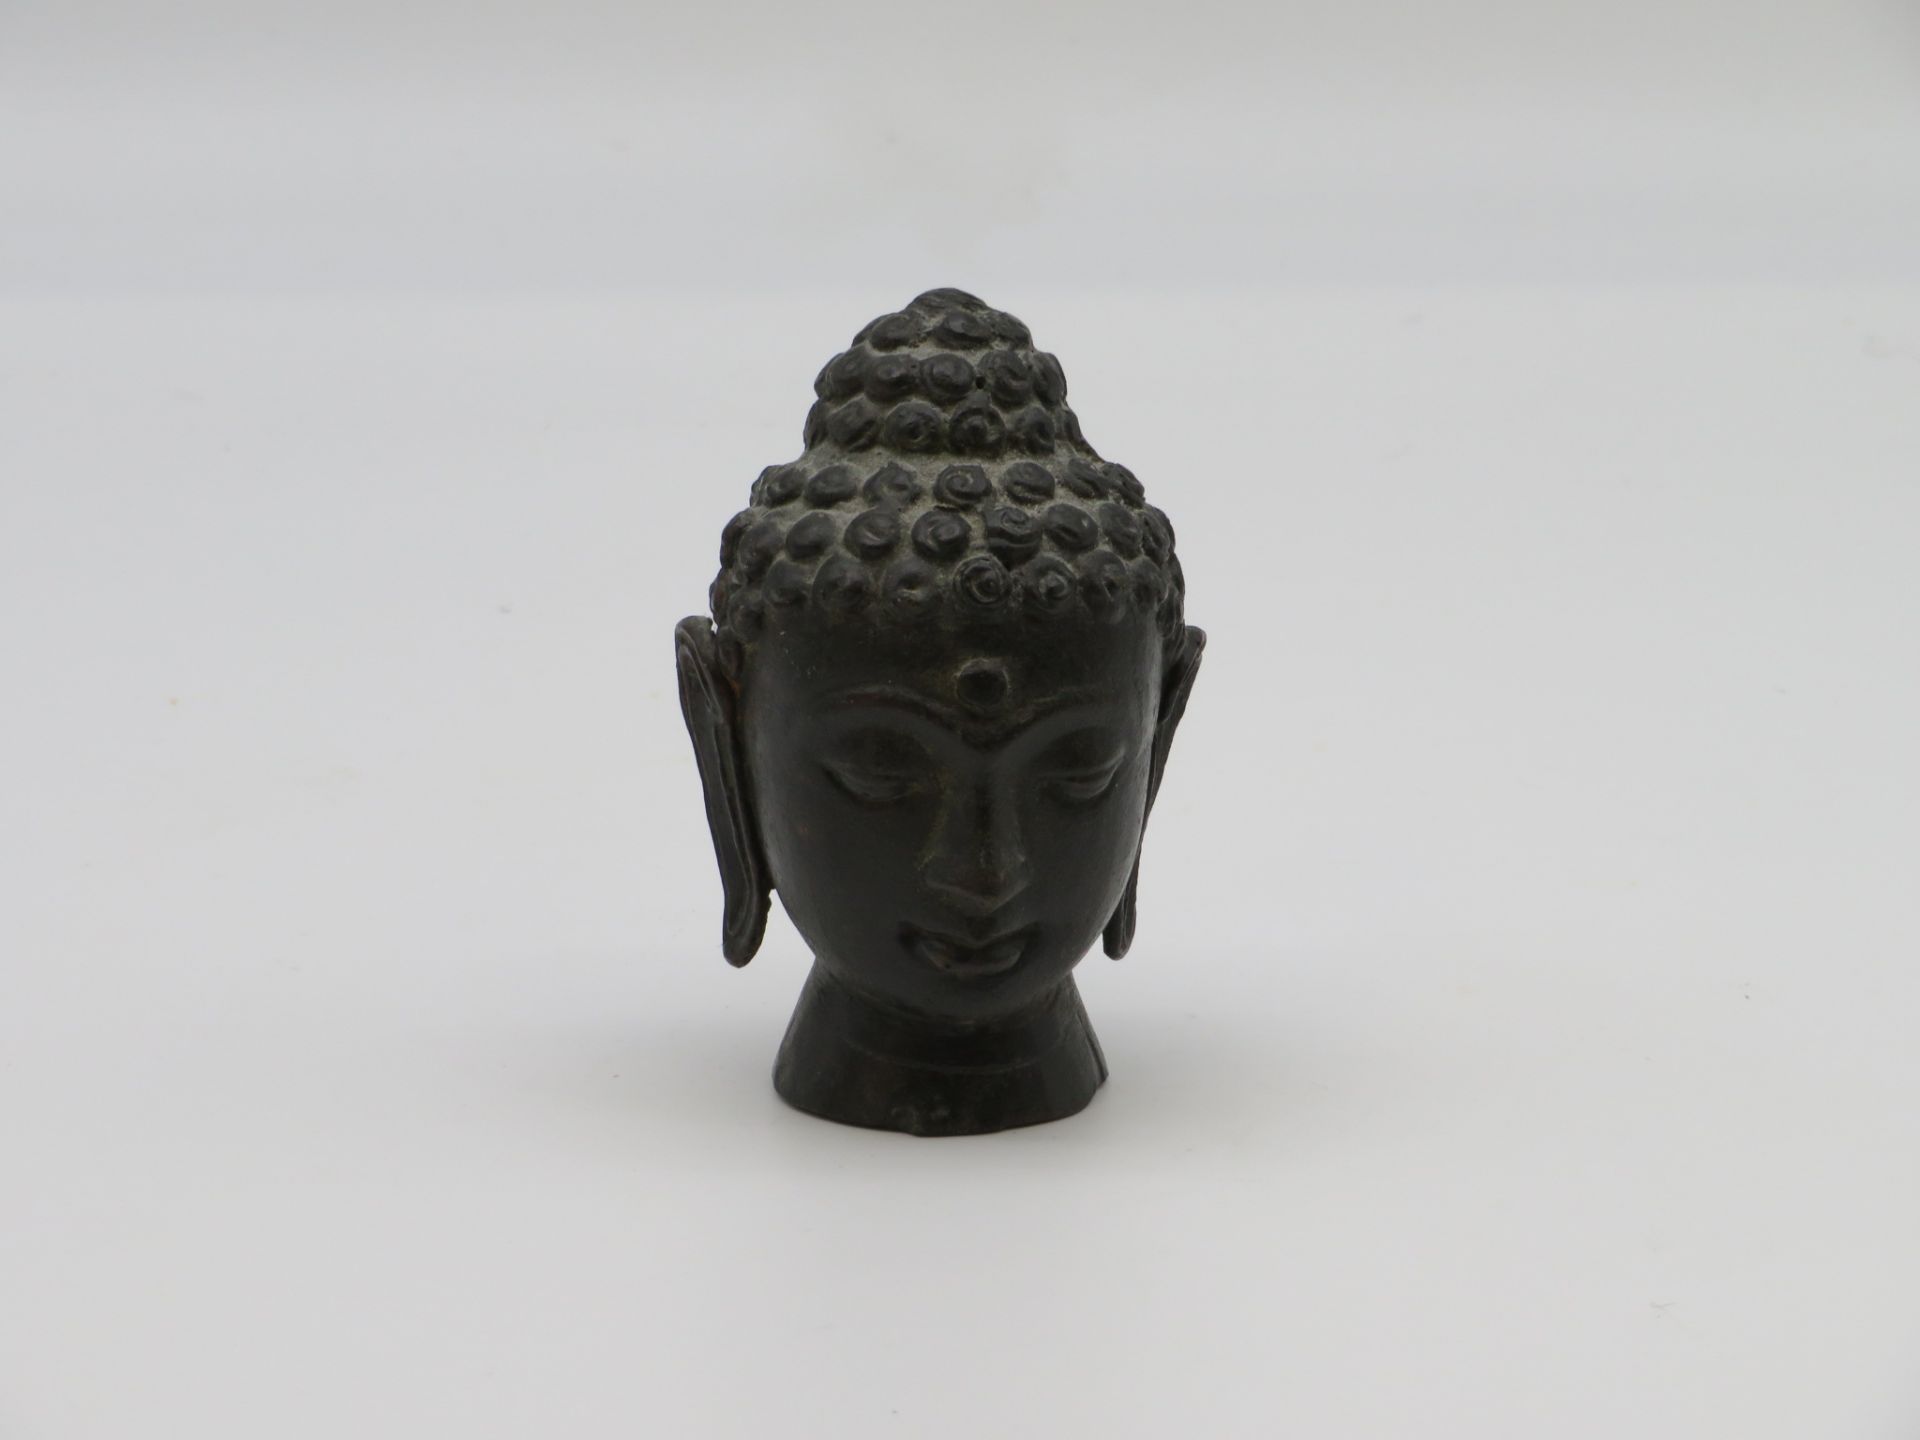 Buddhakopf, wohl Kambodscha, Bronze, h 10 cm, d 6,5 cm.